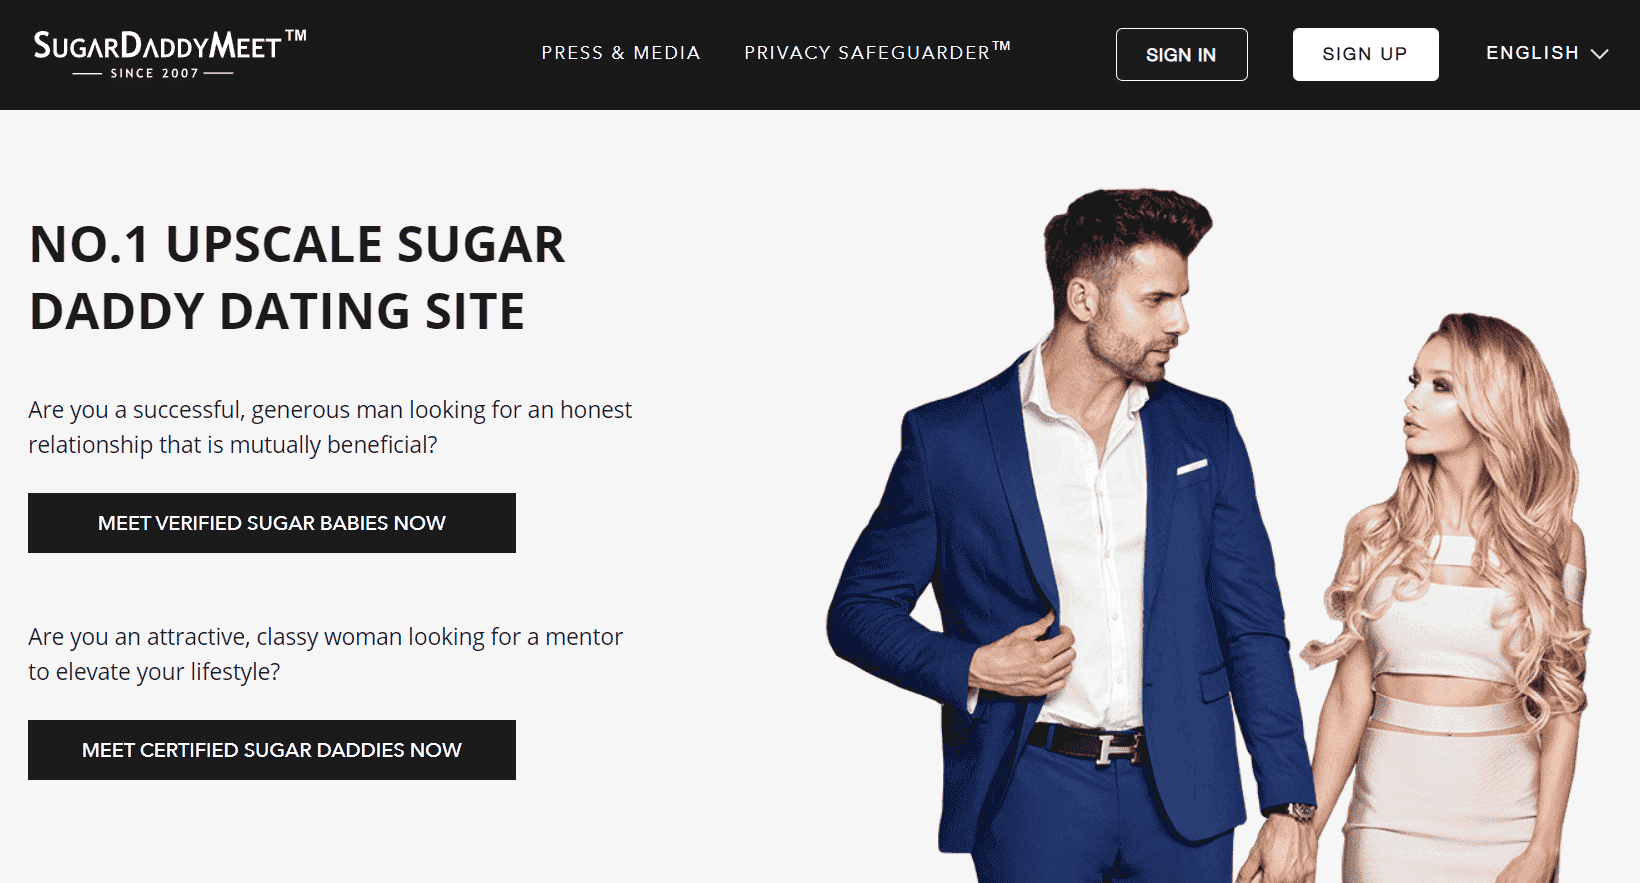 Página de inicio del sitio web SugarDaddyMeet